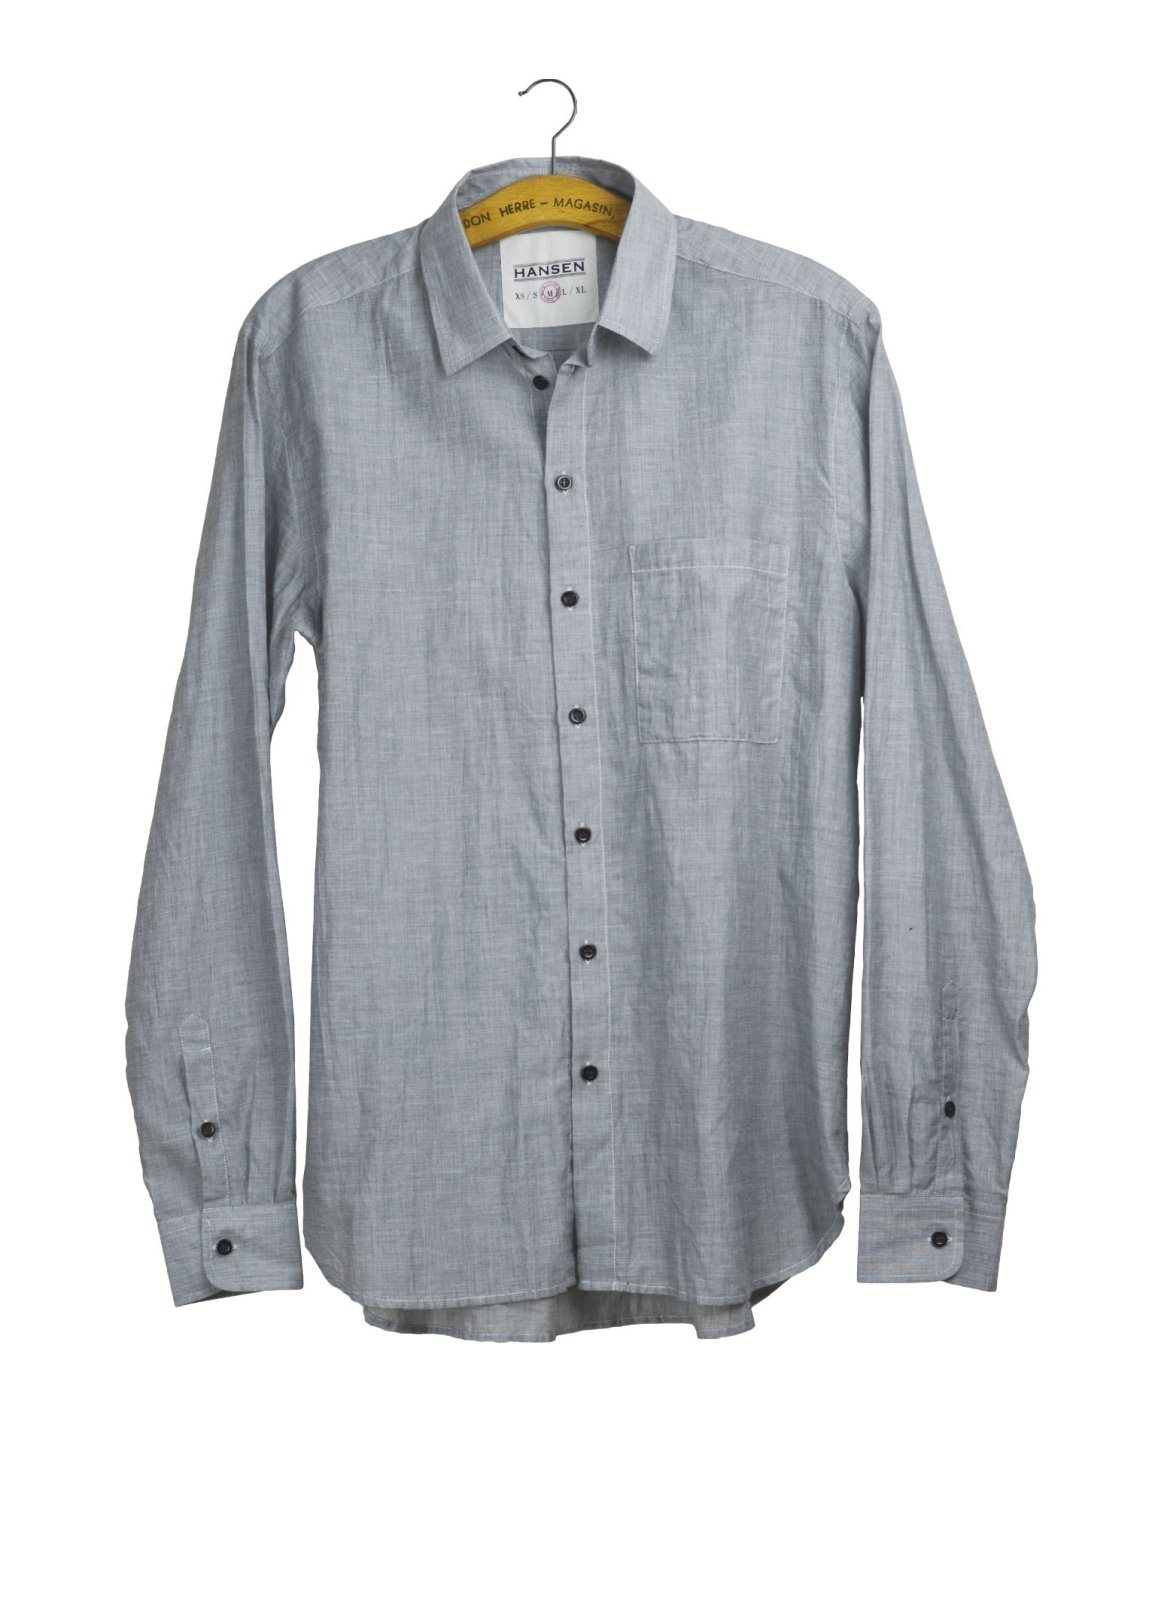 HENNING | Casual Classic Shirt | Light Grey | €200 -HANSEN Garments- HANSEN Garments